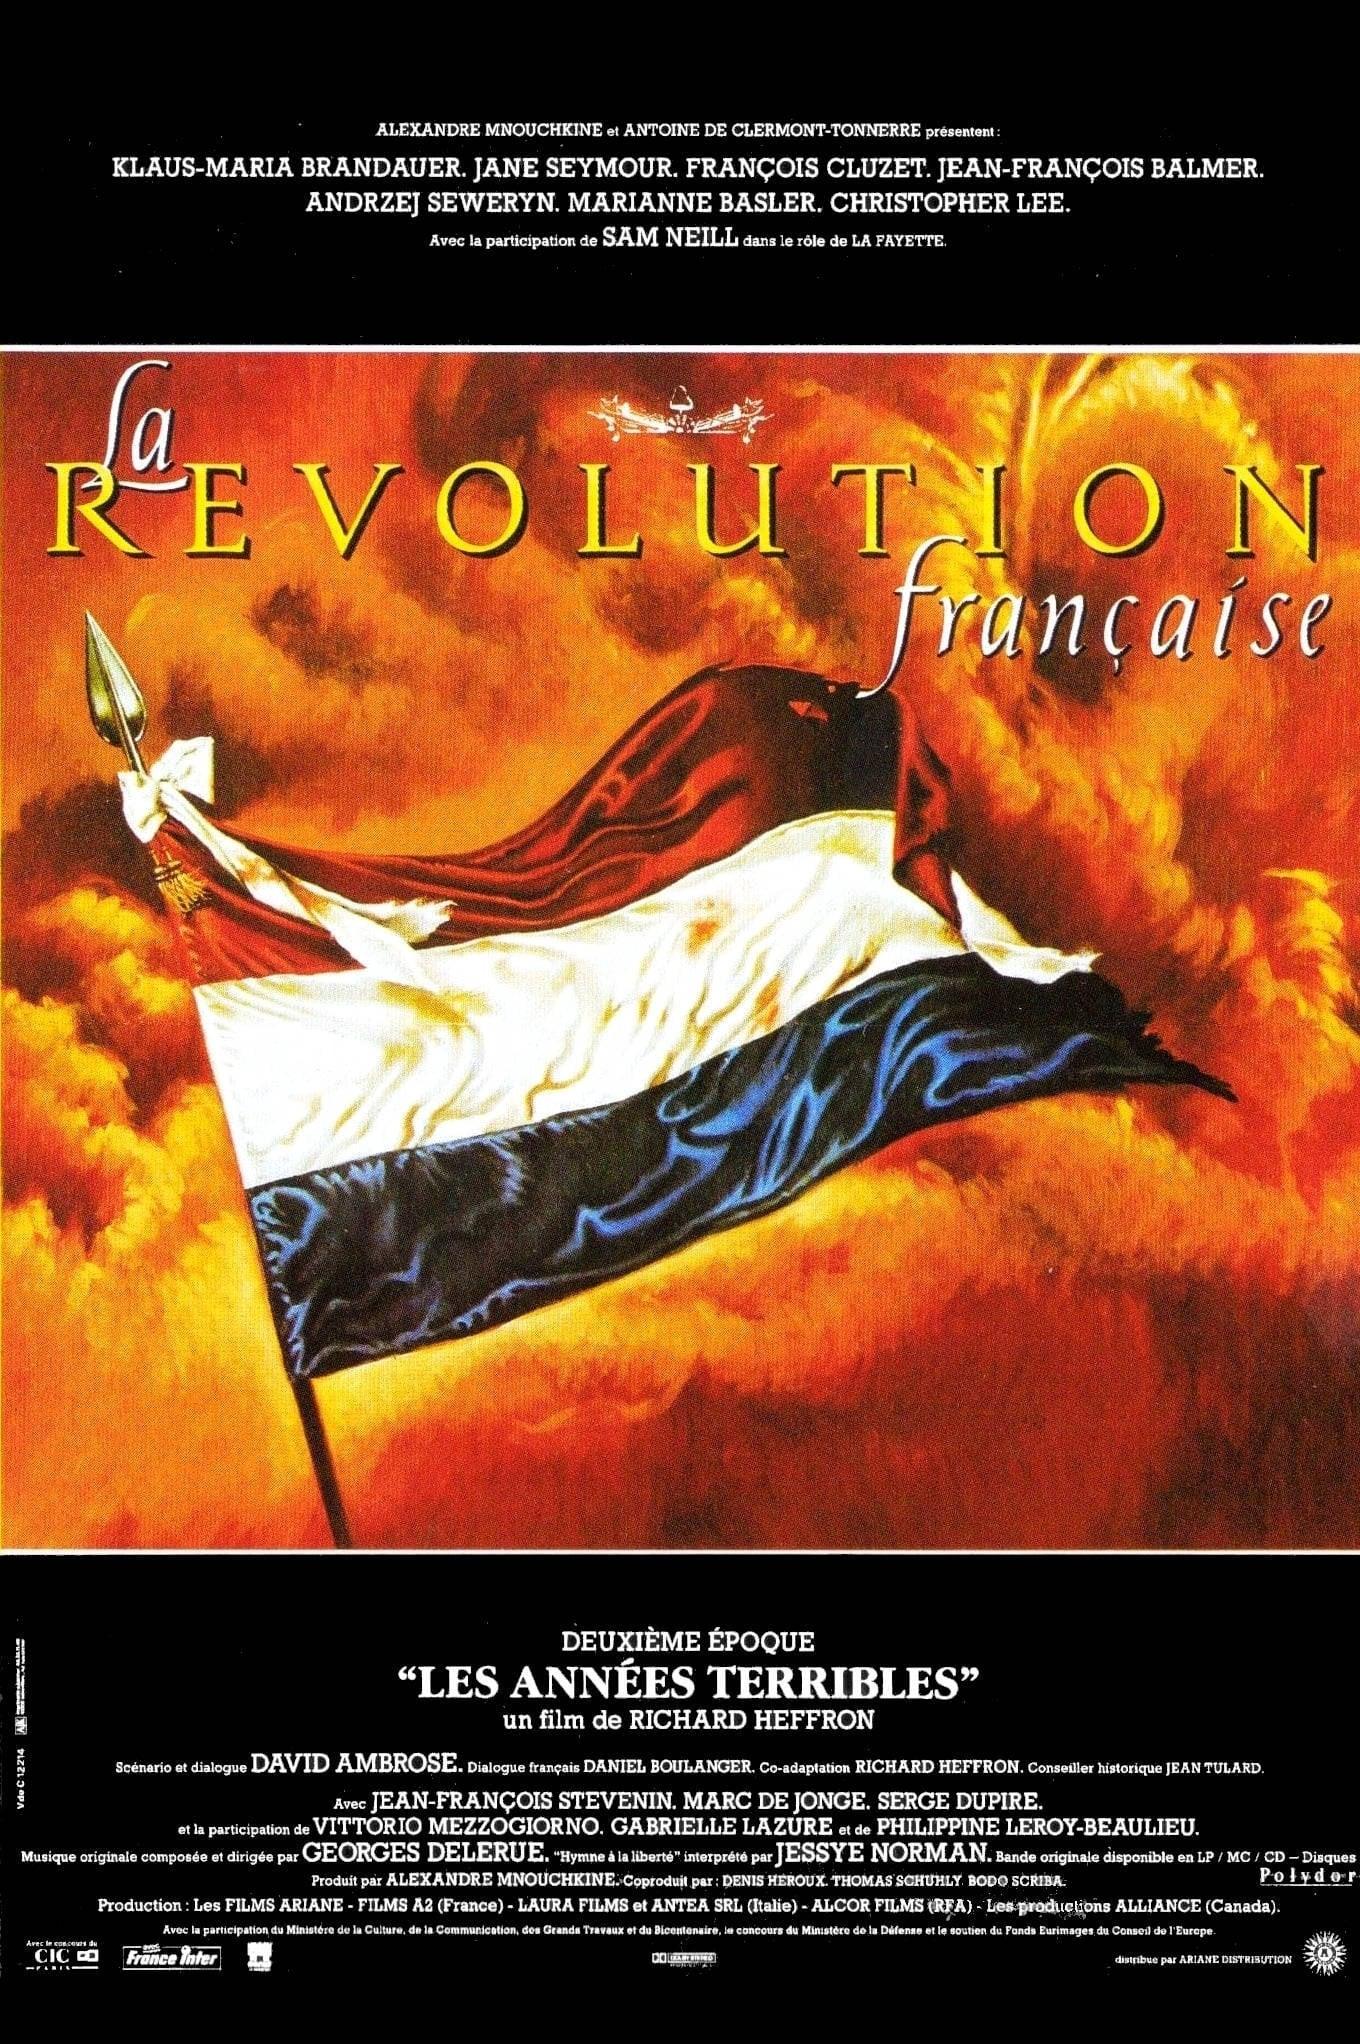 Die Französische Revolution poster